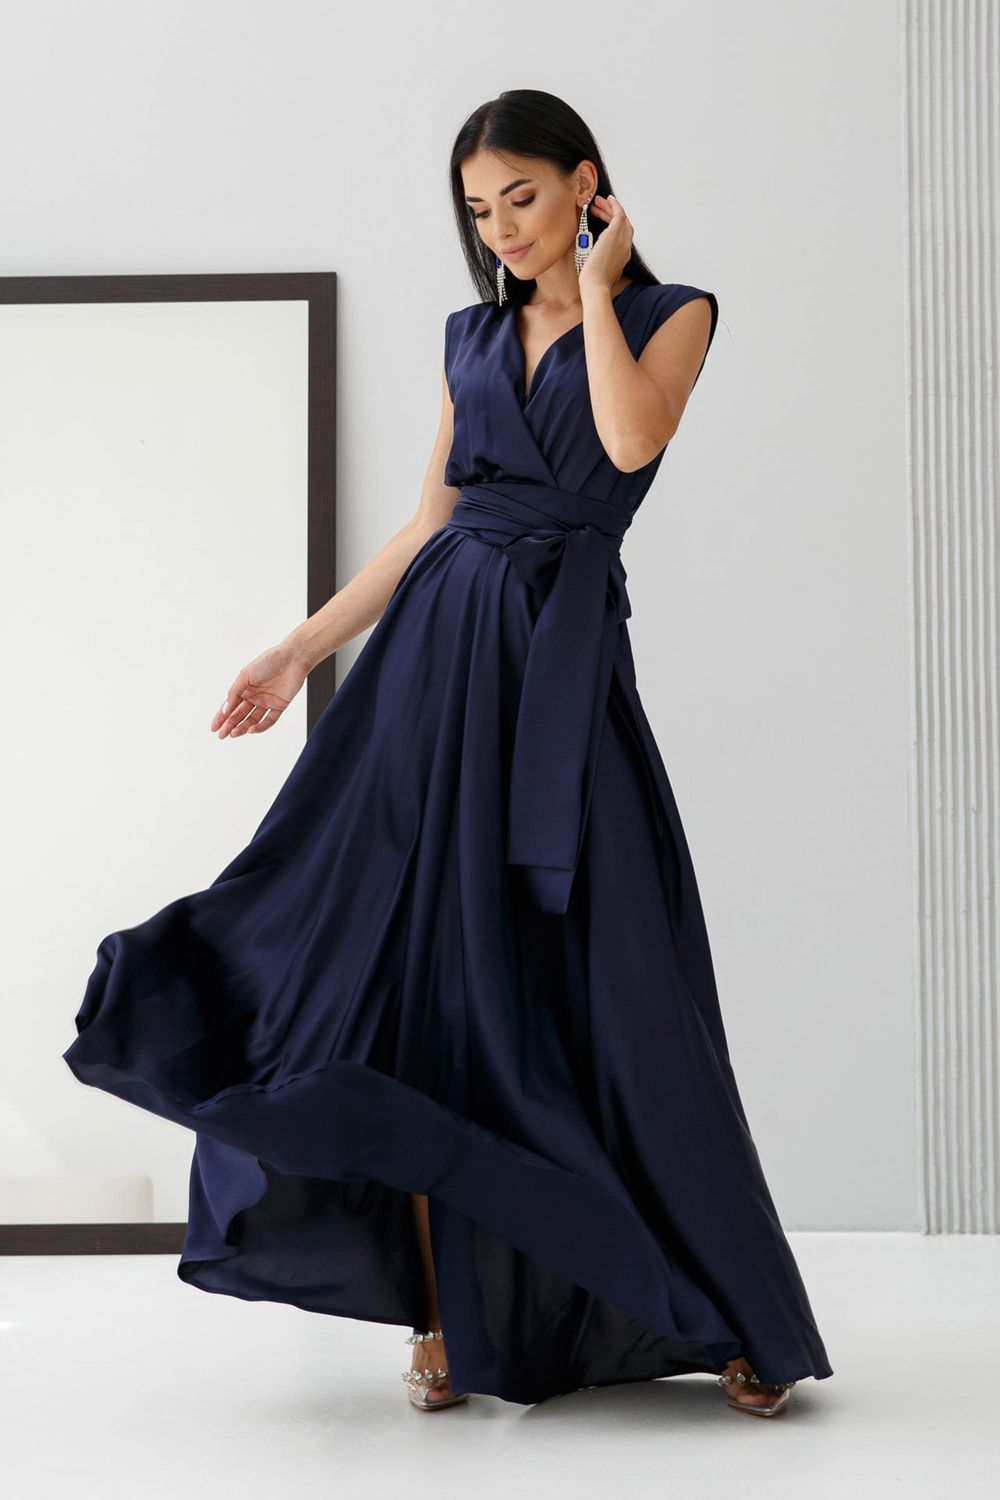 Святкова вечірня сукня з шовку синього кольору - фото